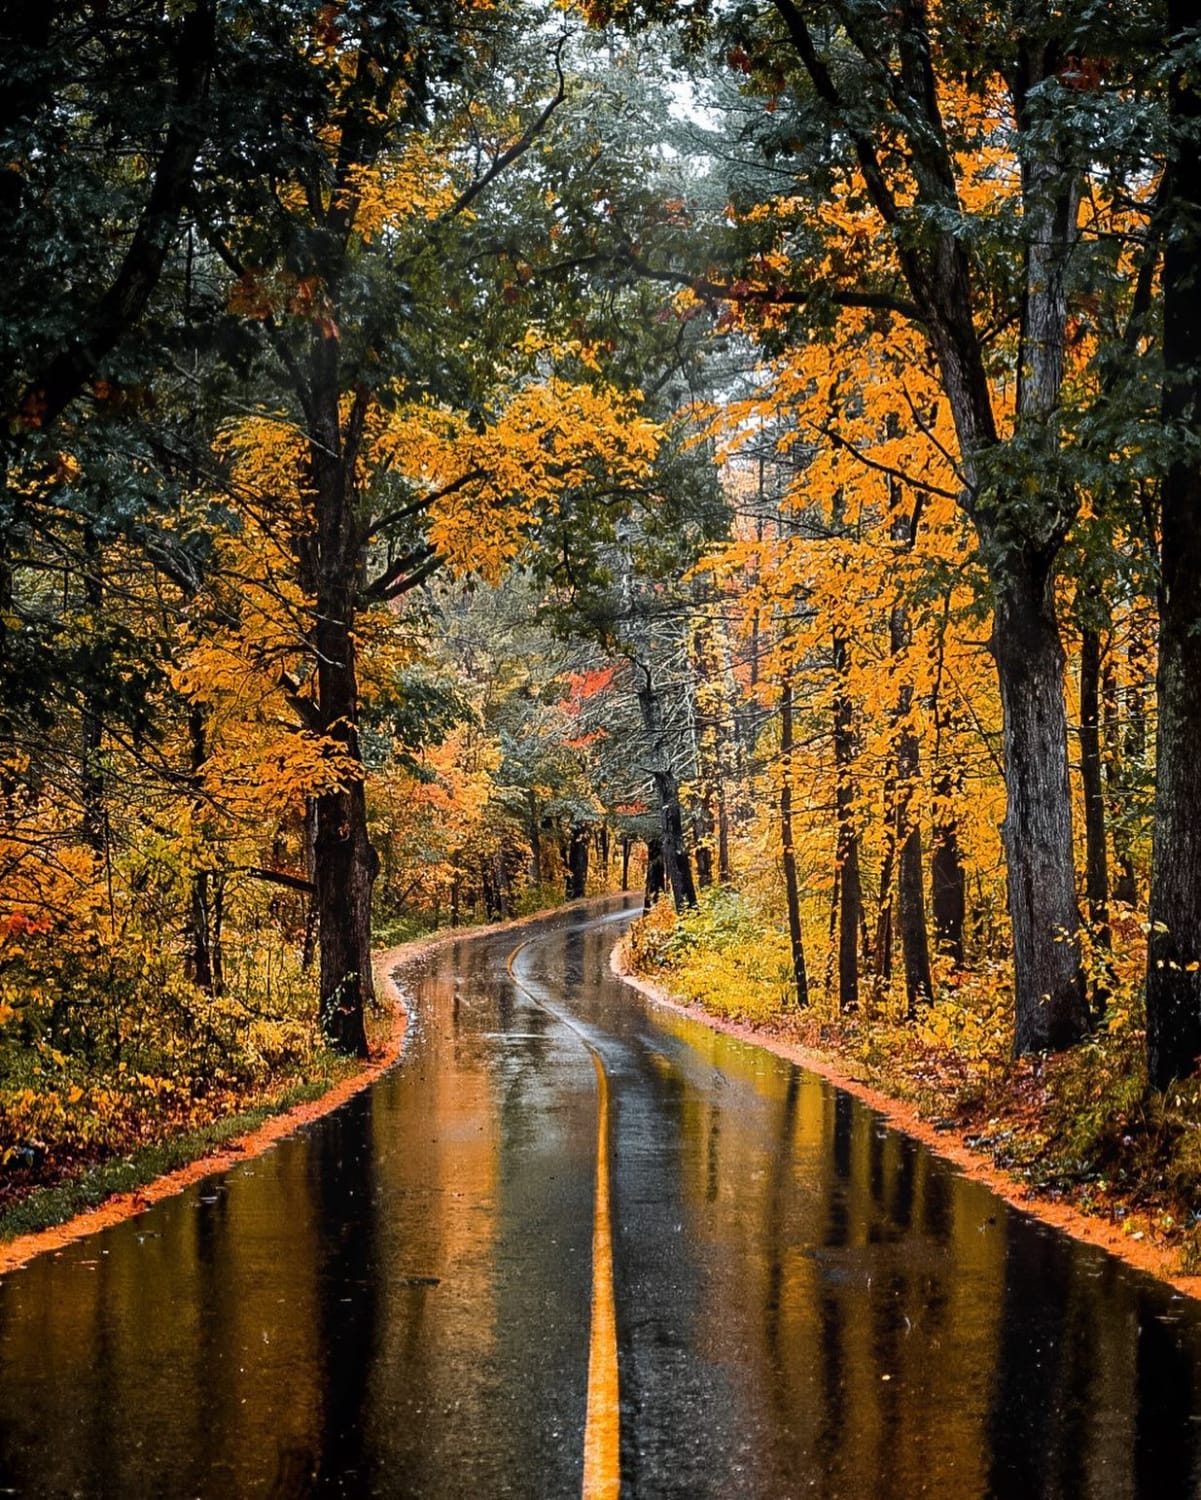 Rain soaked autumn road, Groton, Middlesex County, Massachusetts.